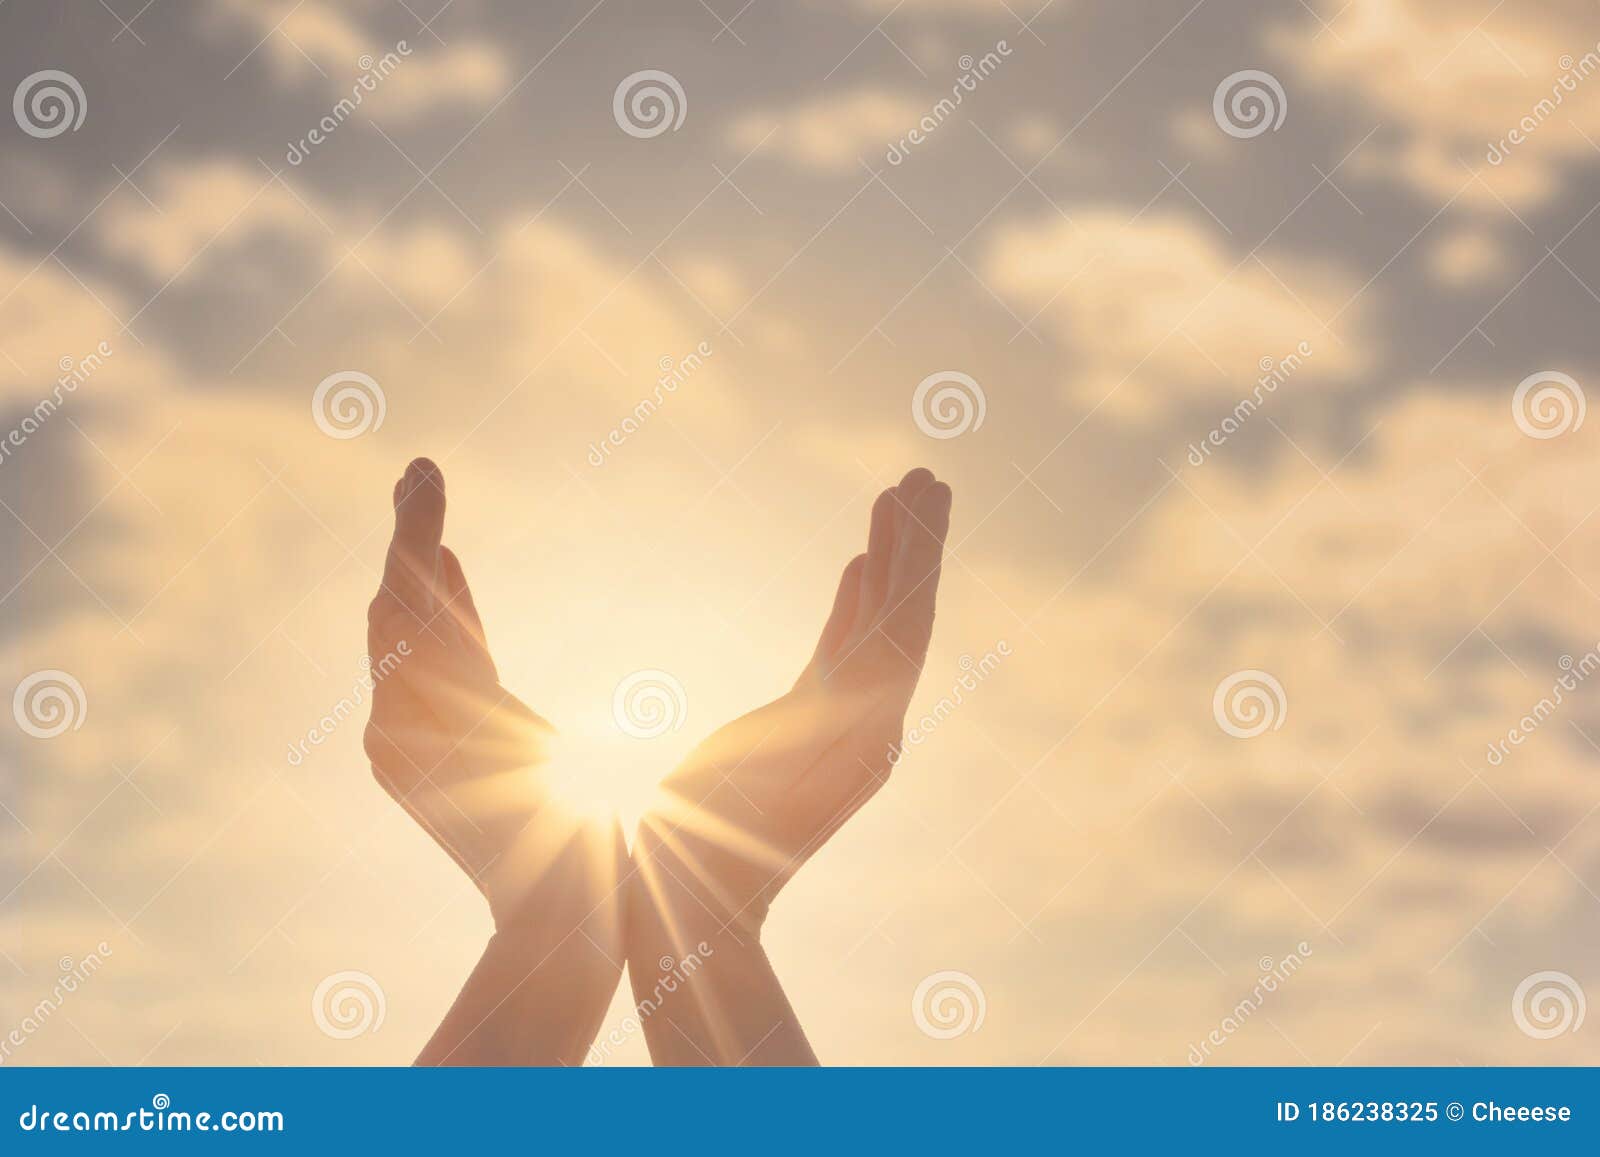 Солнышко в руках о чем песня. Солнце в руках. Руки держат солнце. Женские руки и солнце Графика. Прикрывается рукой от солнца.